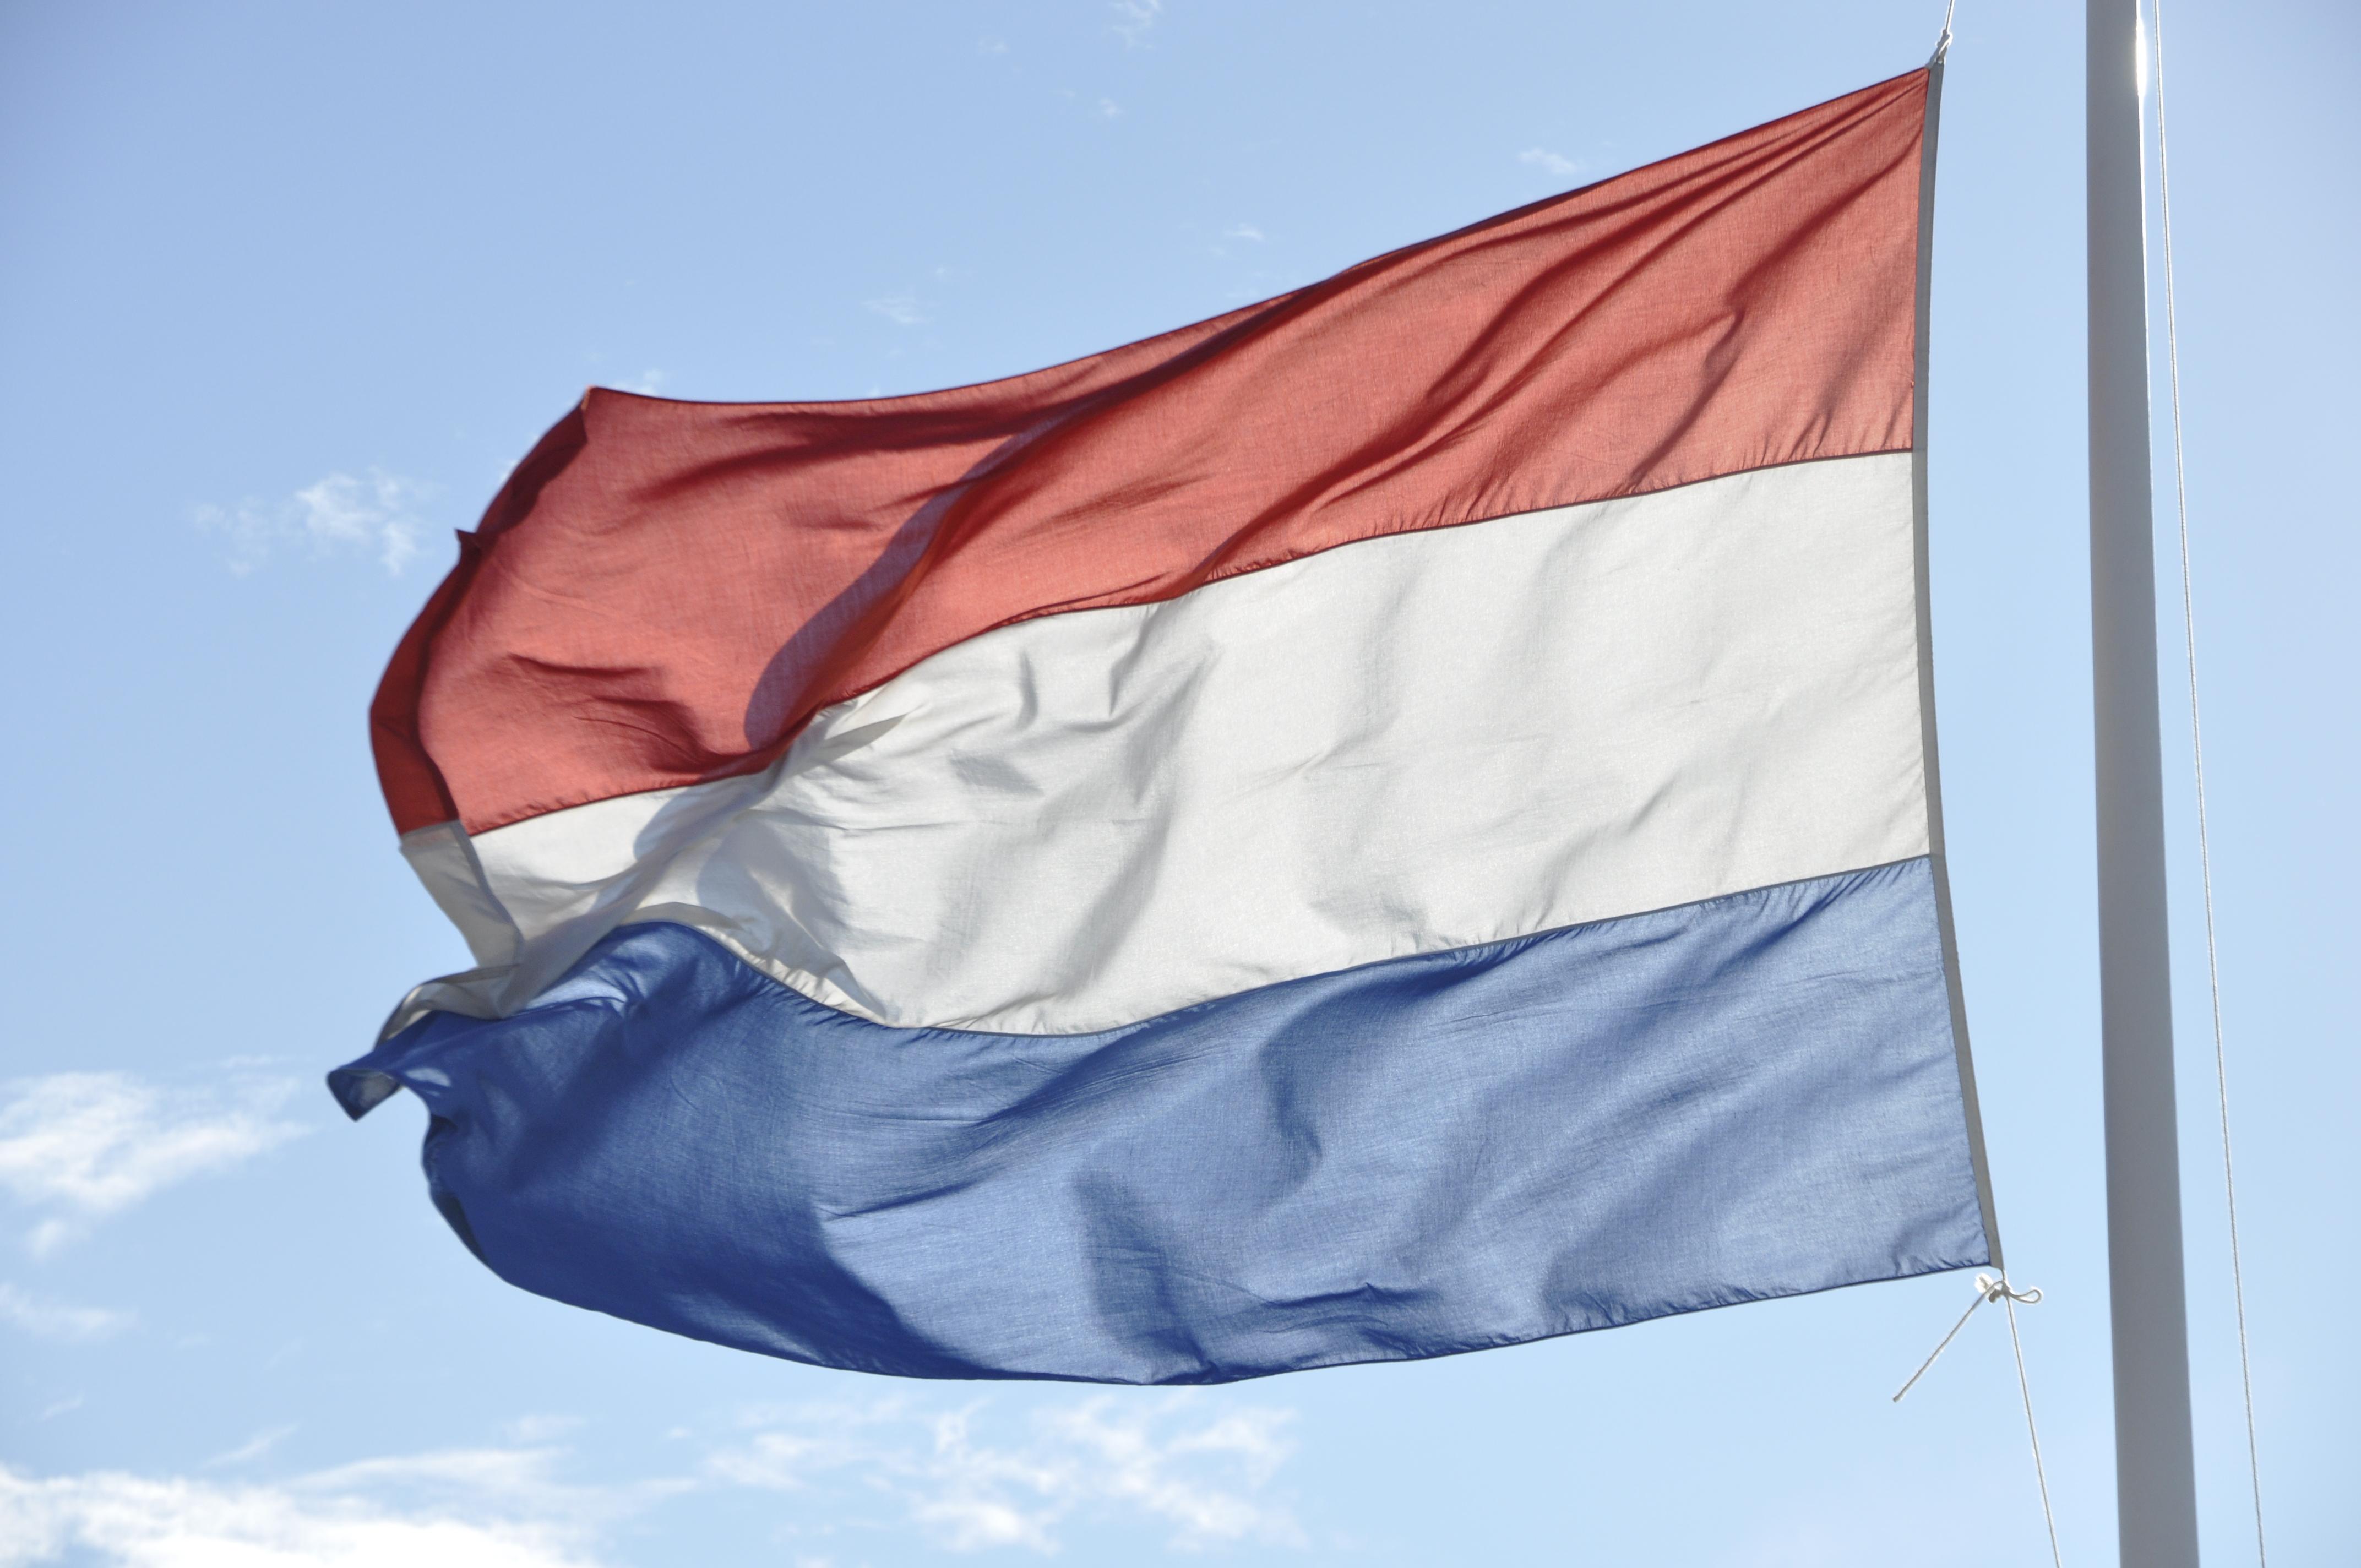 Nederlandse-vlag